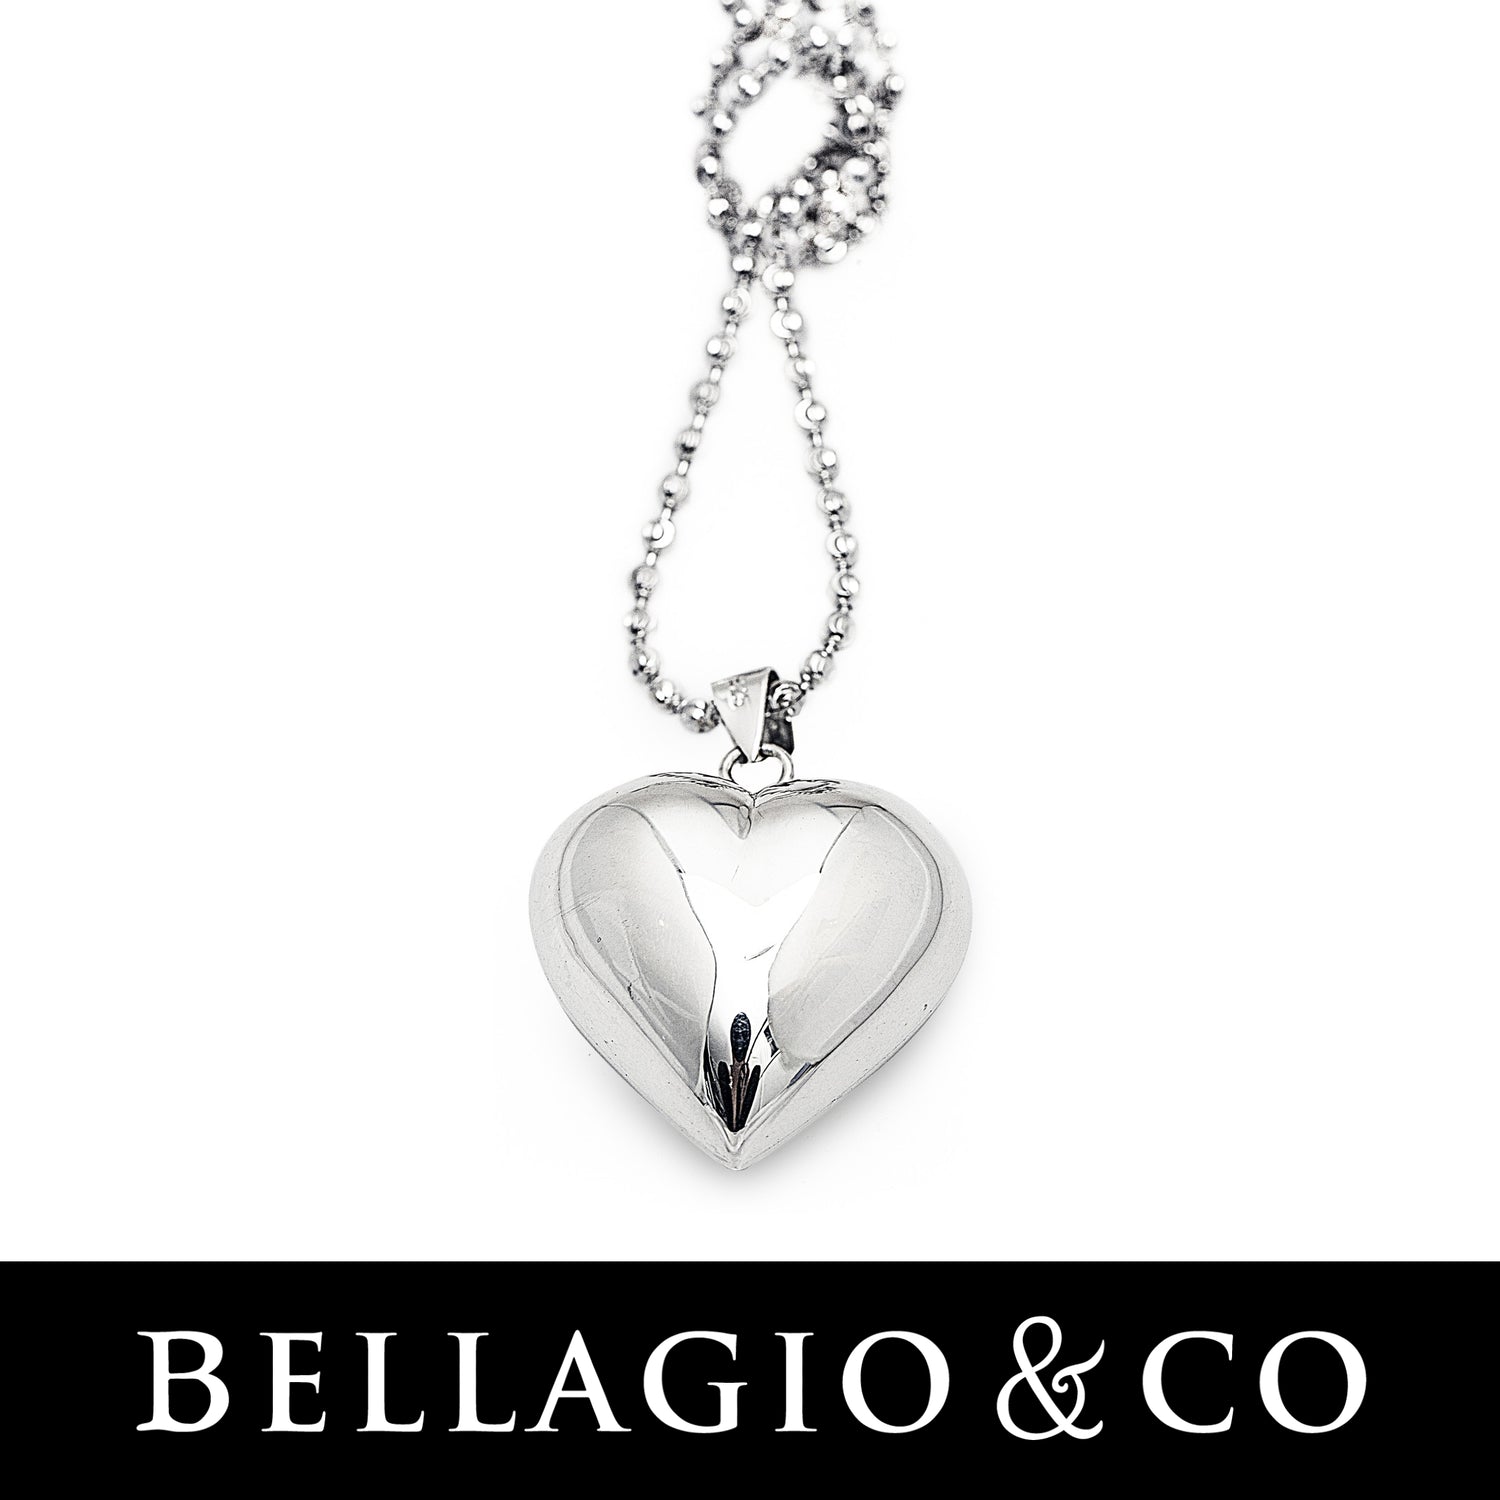 Heart jewellery range in 925 sterling silver. Worldwide shipping.